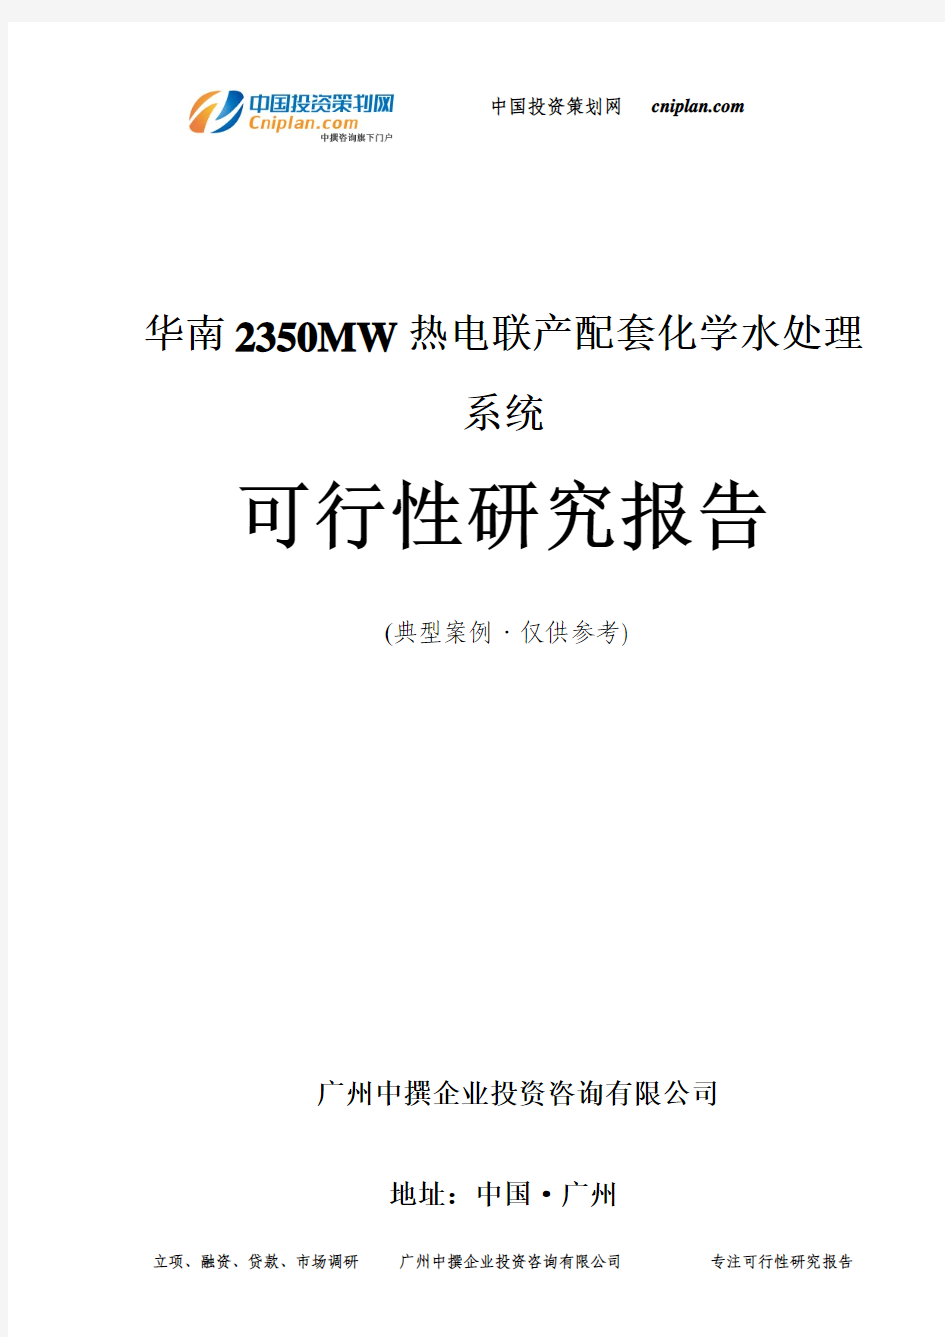 华南2350MW热电联产配套化学水处理系统可行性研究报告-广州中撰咨询